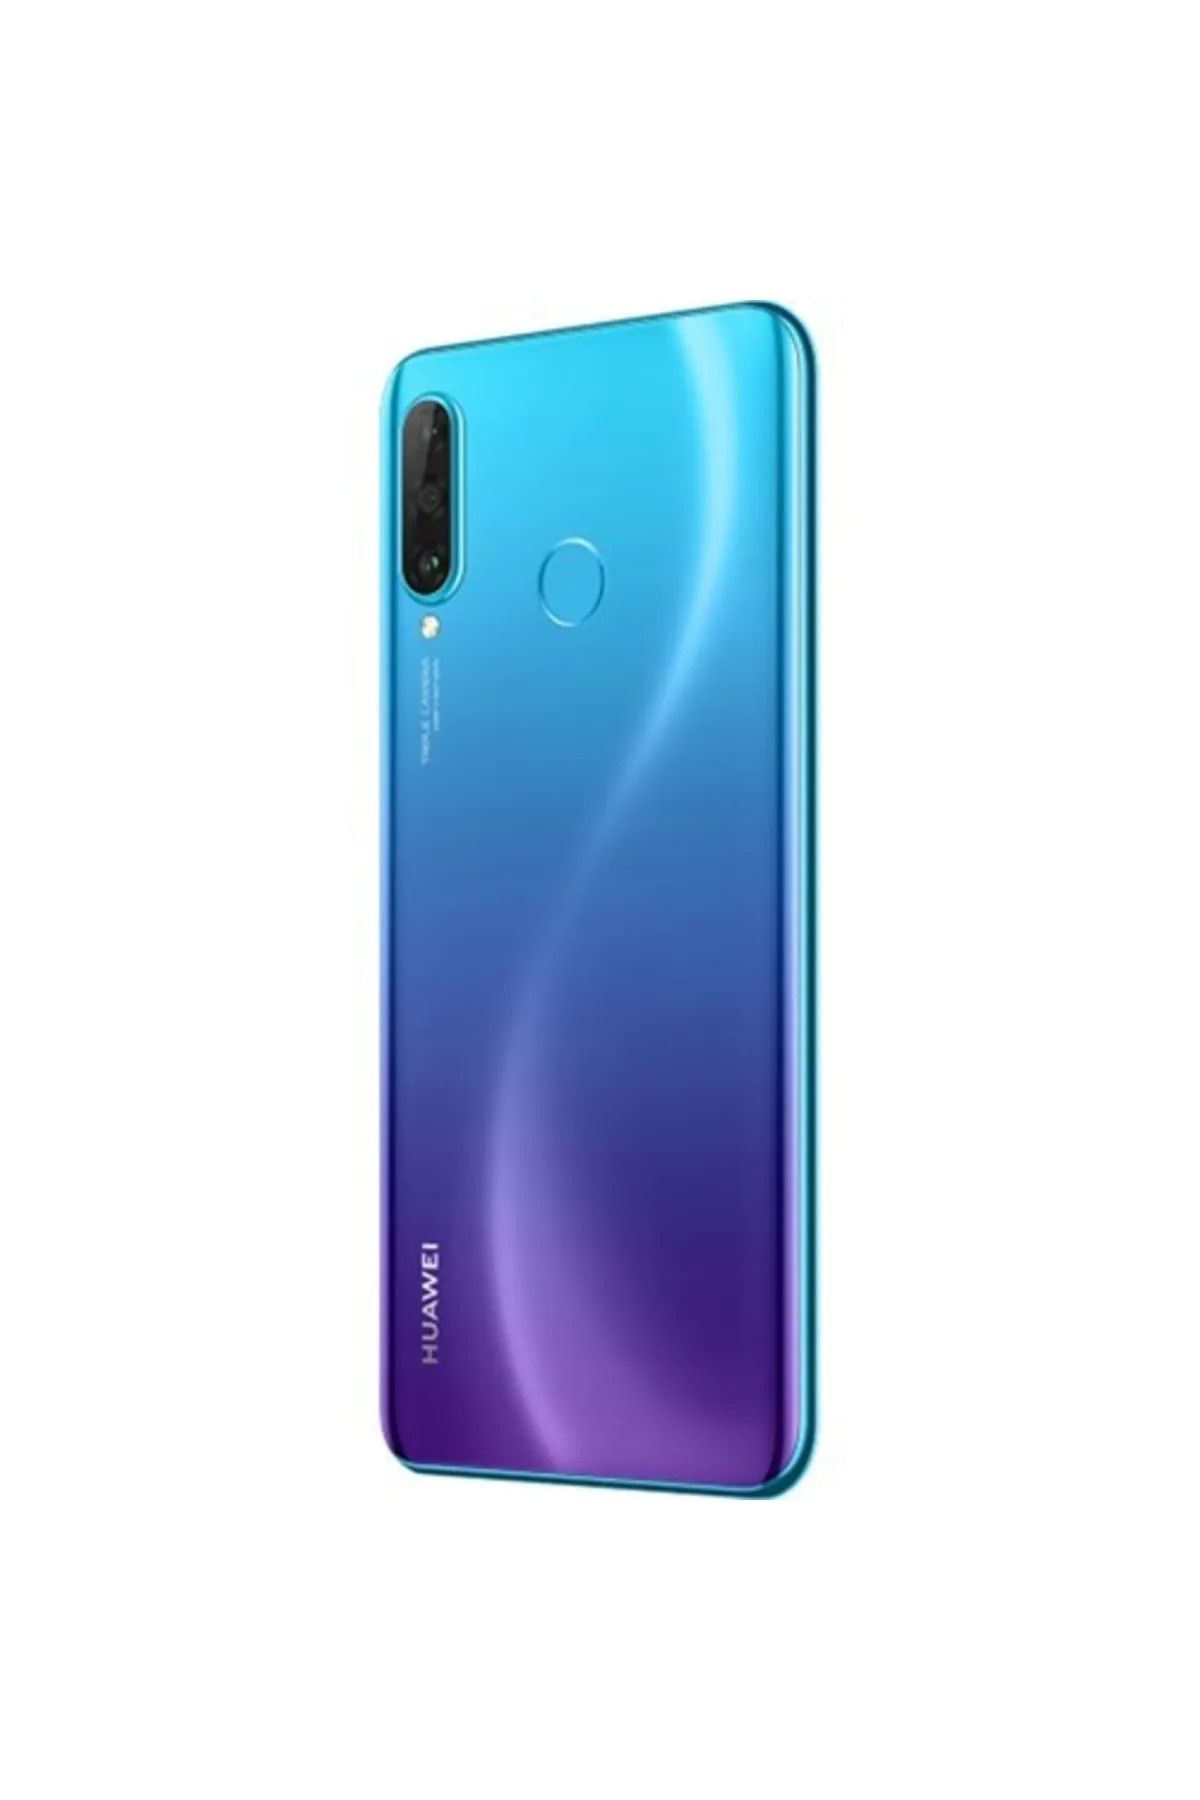 Huawei Yenilenmiş Huawei P30 Lite 64 GB Mavi Cep Telefonu (1 Yıl Garantili - A Kalite)